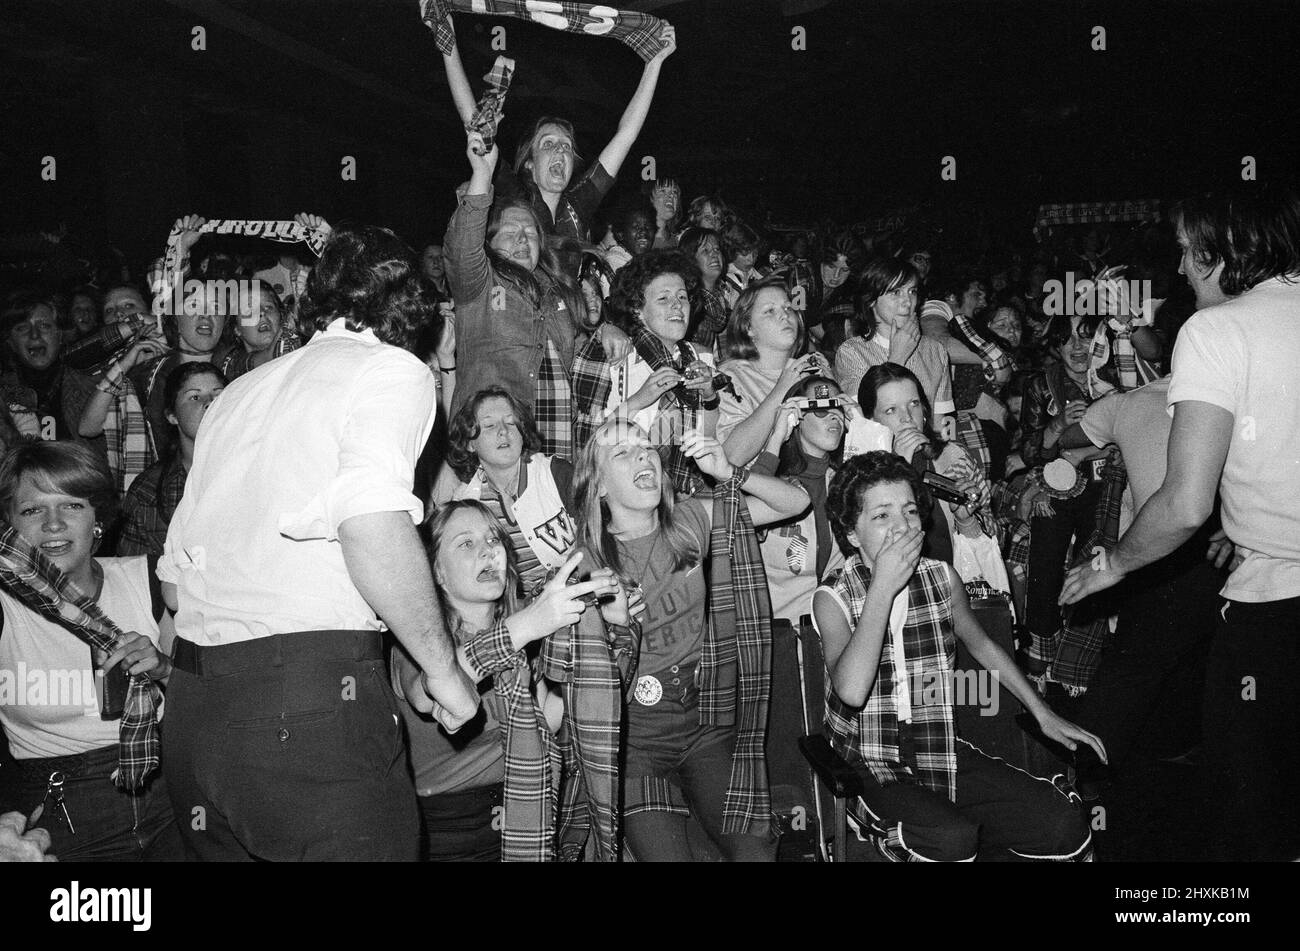 Des fans hystériques assistent à un concert Bay City Rollers à Victoria, Londres. Les adolescents criants ont causé des milliers de livres de dégâts et le spectacle a dû être arrêté deux fois quand les fans ont grimpé en avant. 19th septembre 1976. Banque D'Images